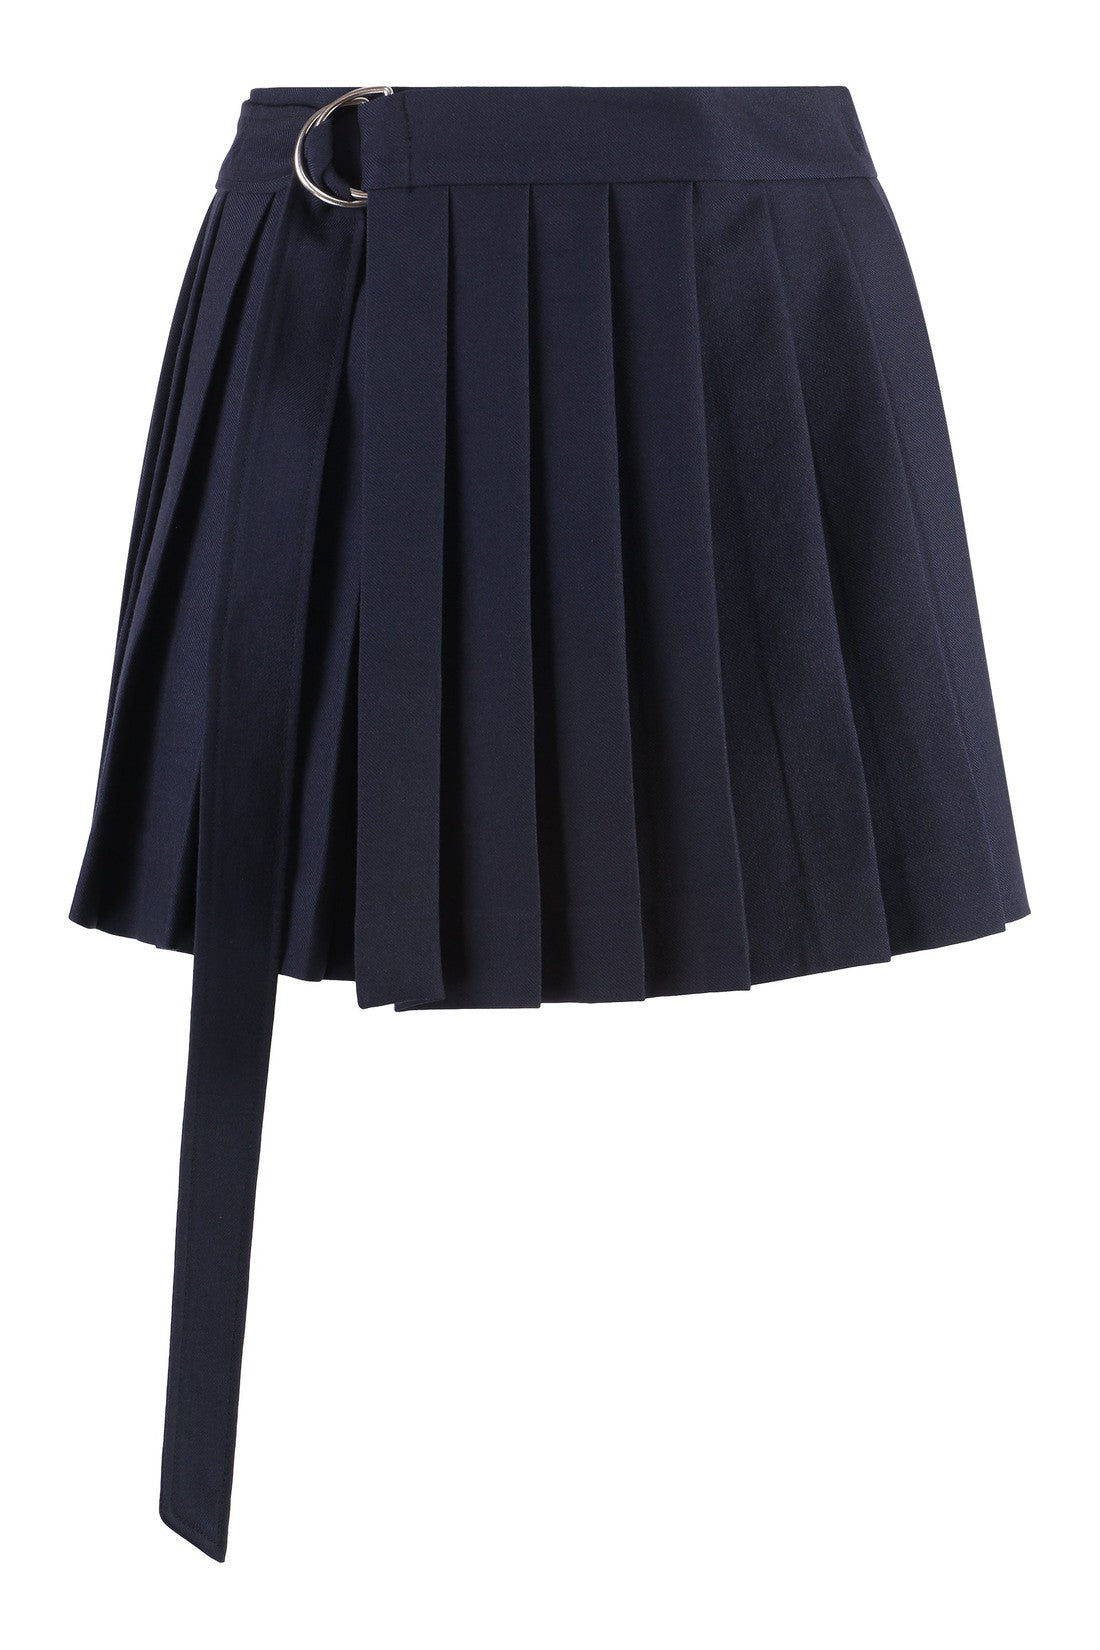 Pleated-skirt-AMI-PARIS-designer-outlet-archivist_c553d327-1429-42c3-a13f-05ef08172624.jpg